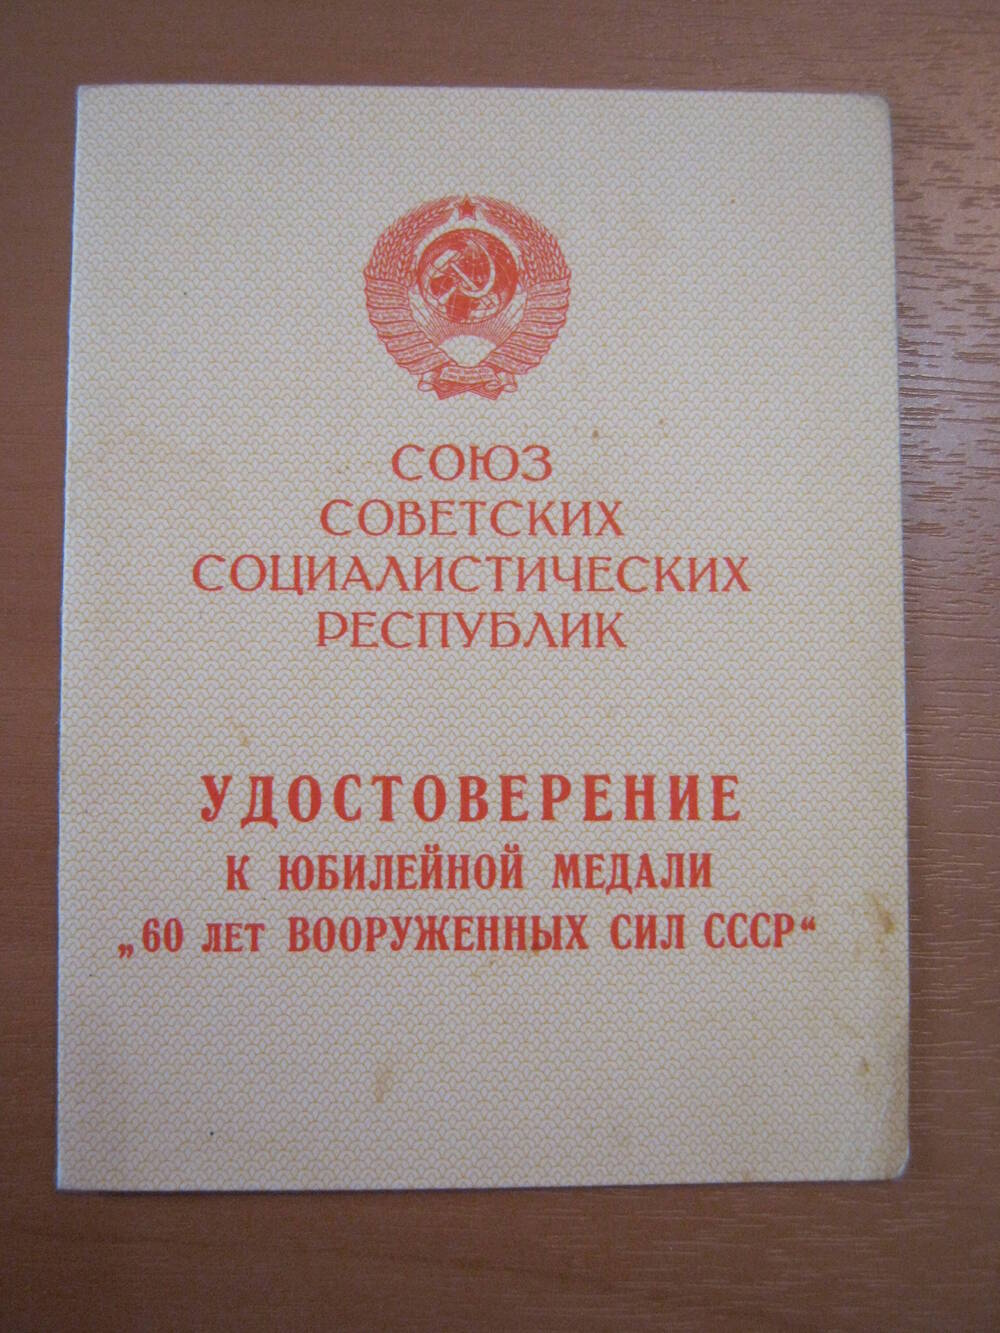 Удостоверение к юбилейной медали 60 лет Вооруженных сил СССР от 02.02.1980.